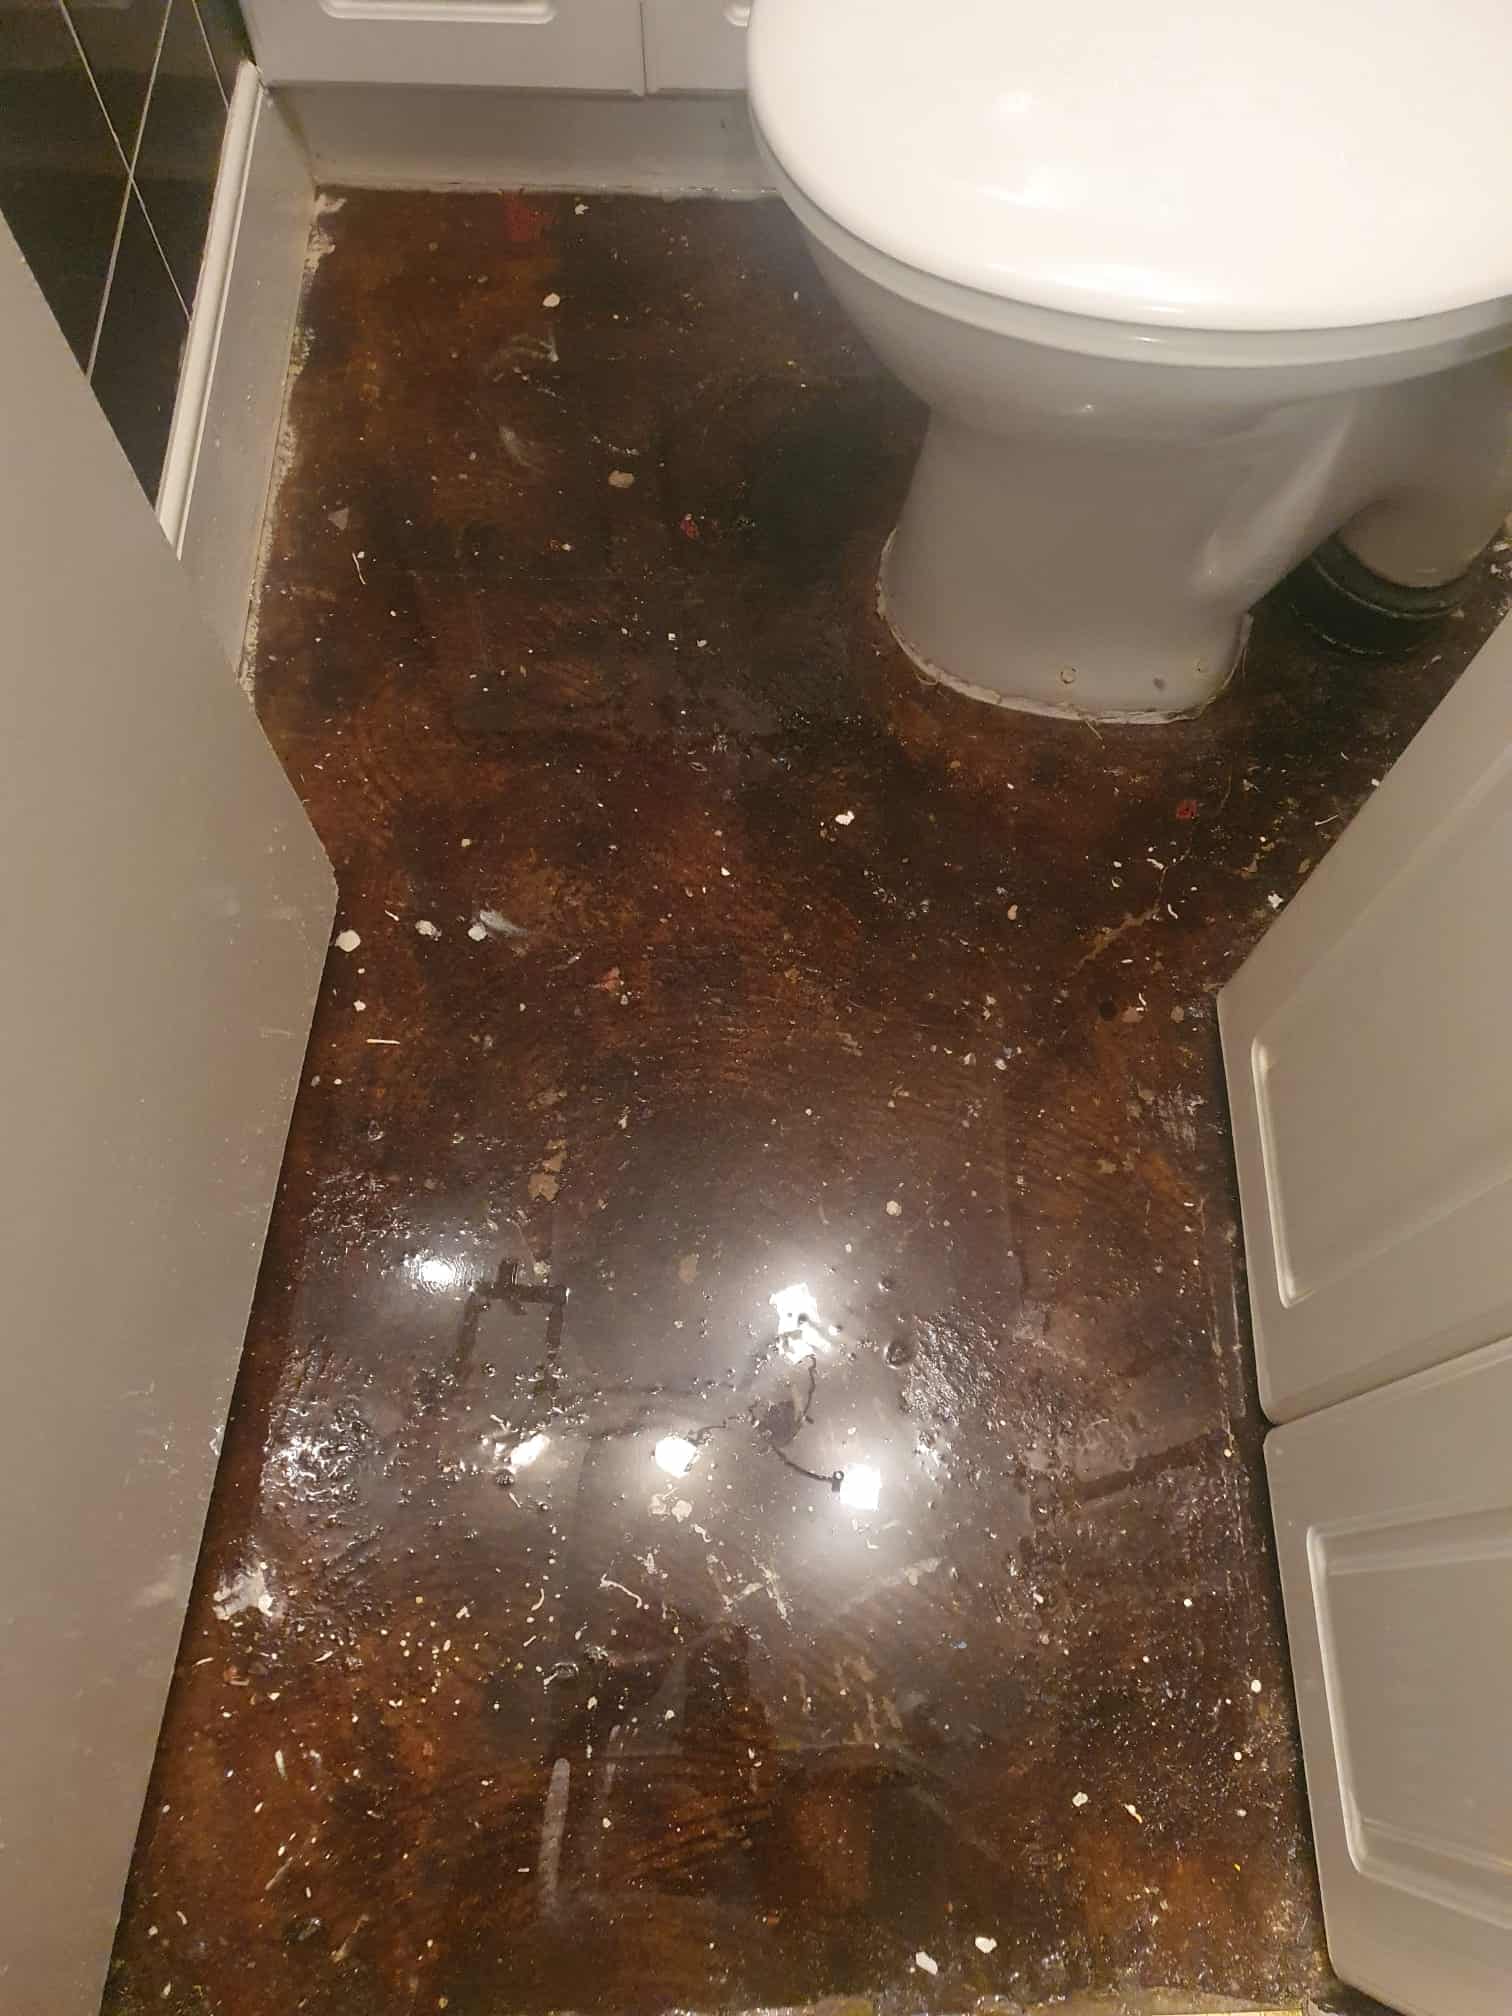 The bathroom floor